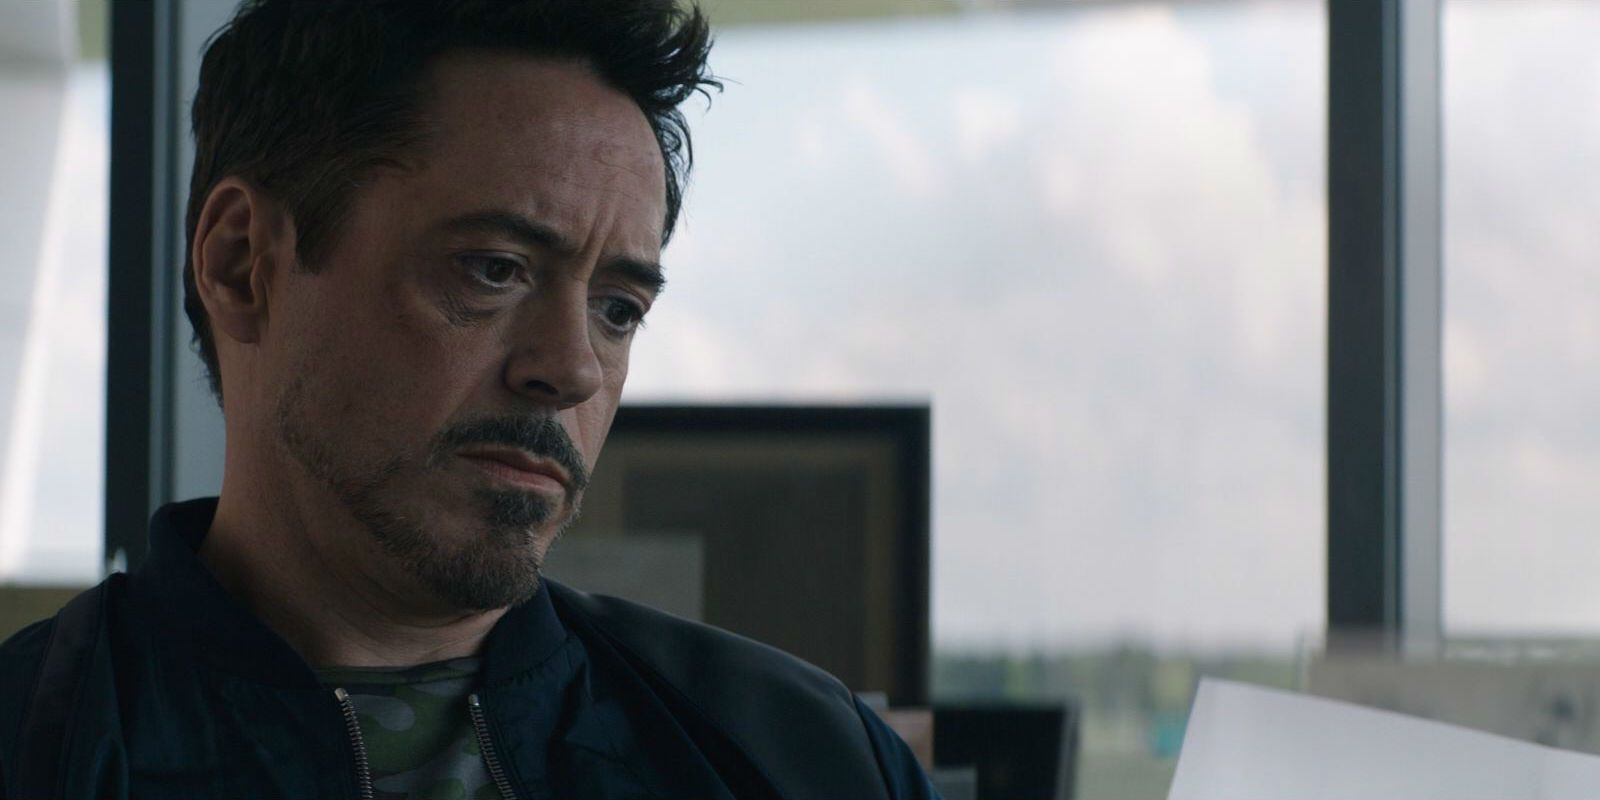 Robert Downey Jr in Captain America Civil War